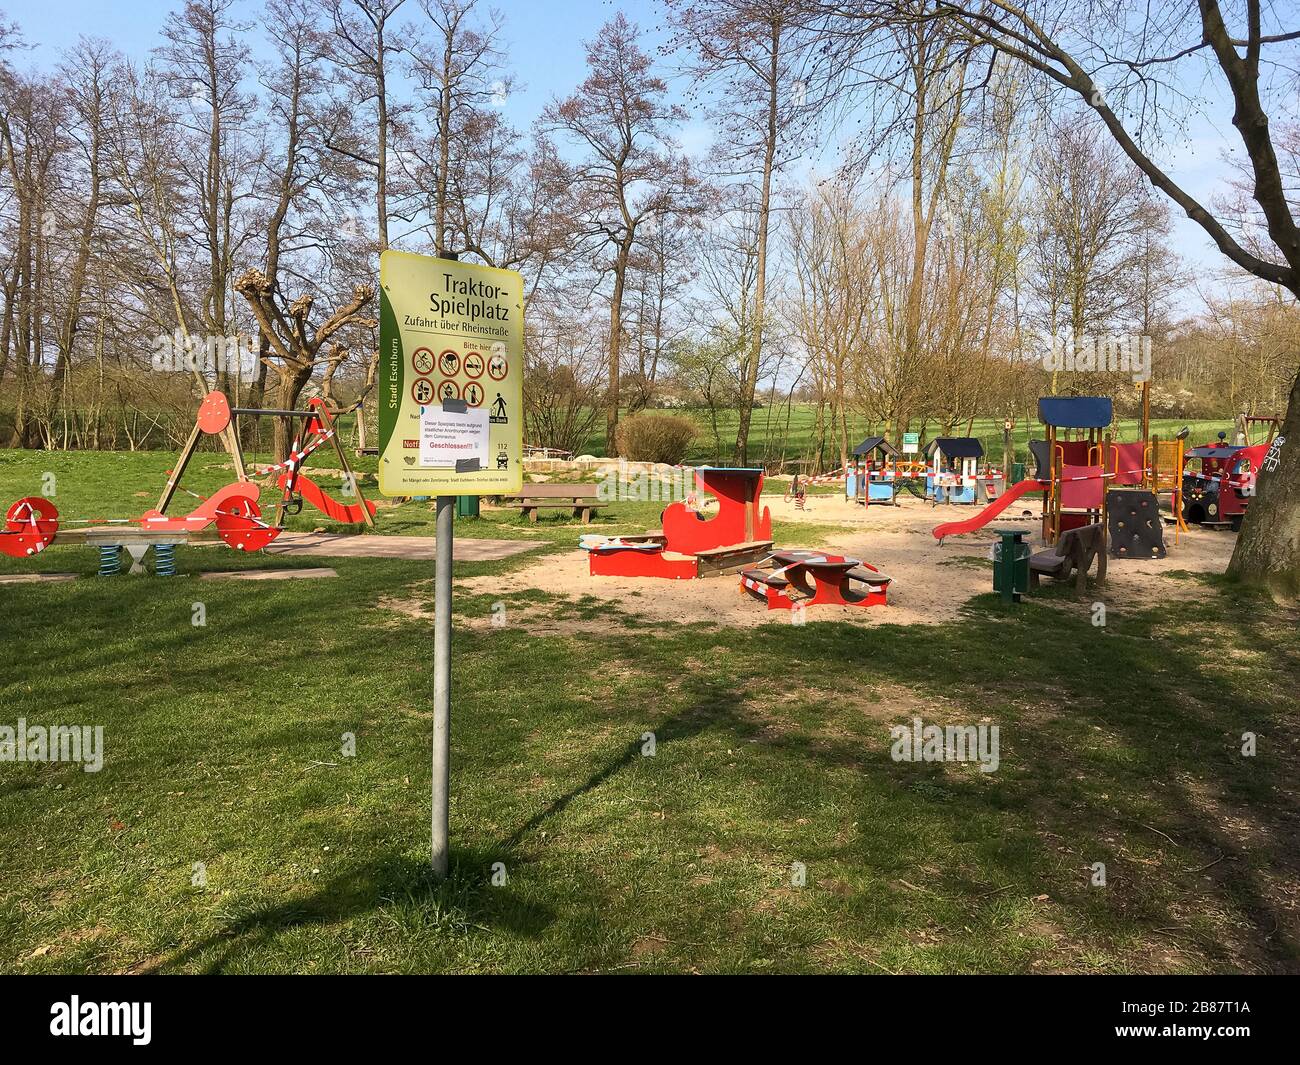 ESCHBORN, GERMANIA - Marzo 20 2020: Un parco giochi per bambini chiuso a causa di misure anti-corona Foto Stock